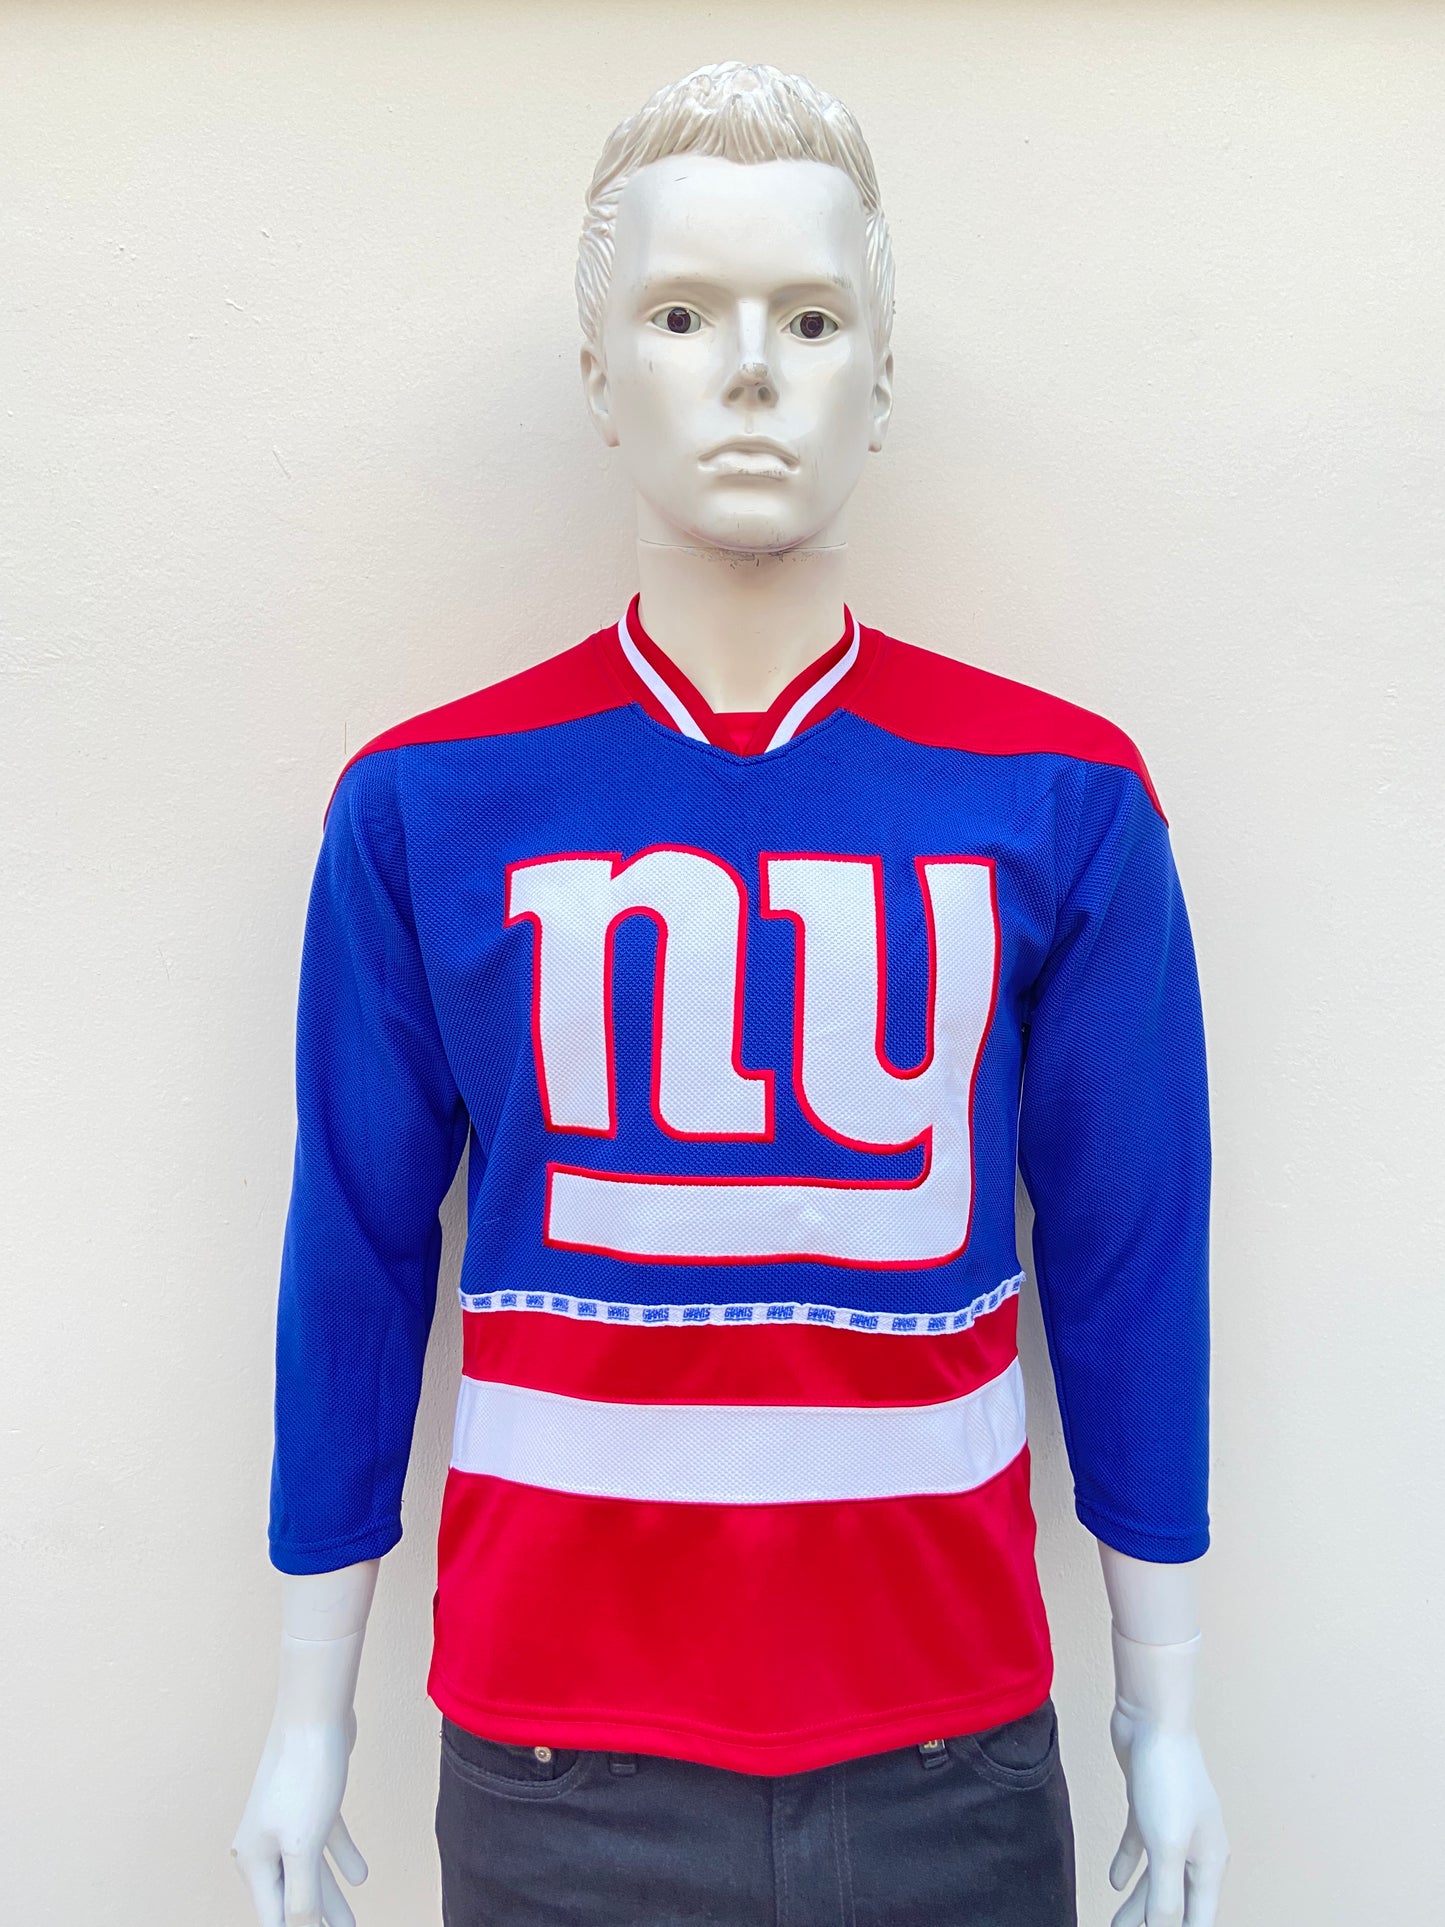 Suéter/t-shirt NFL  original azul rey con rojo y letras NY en blanco.